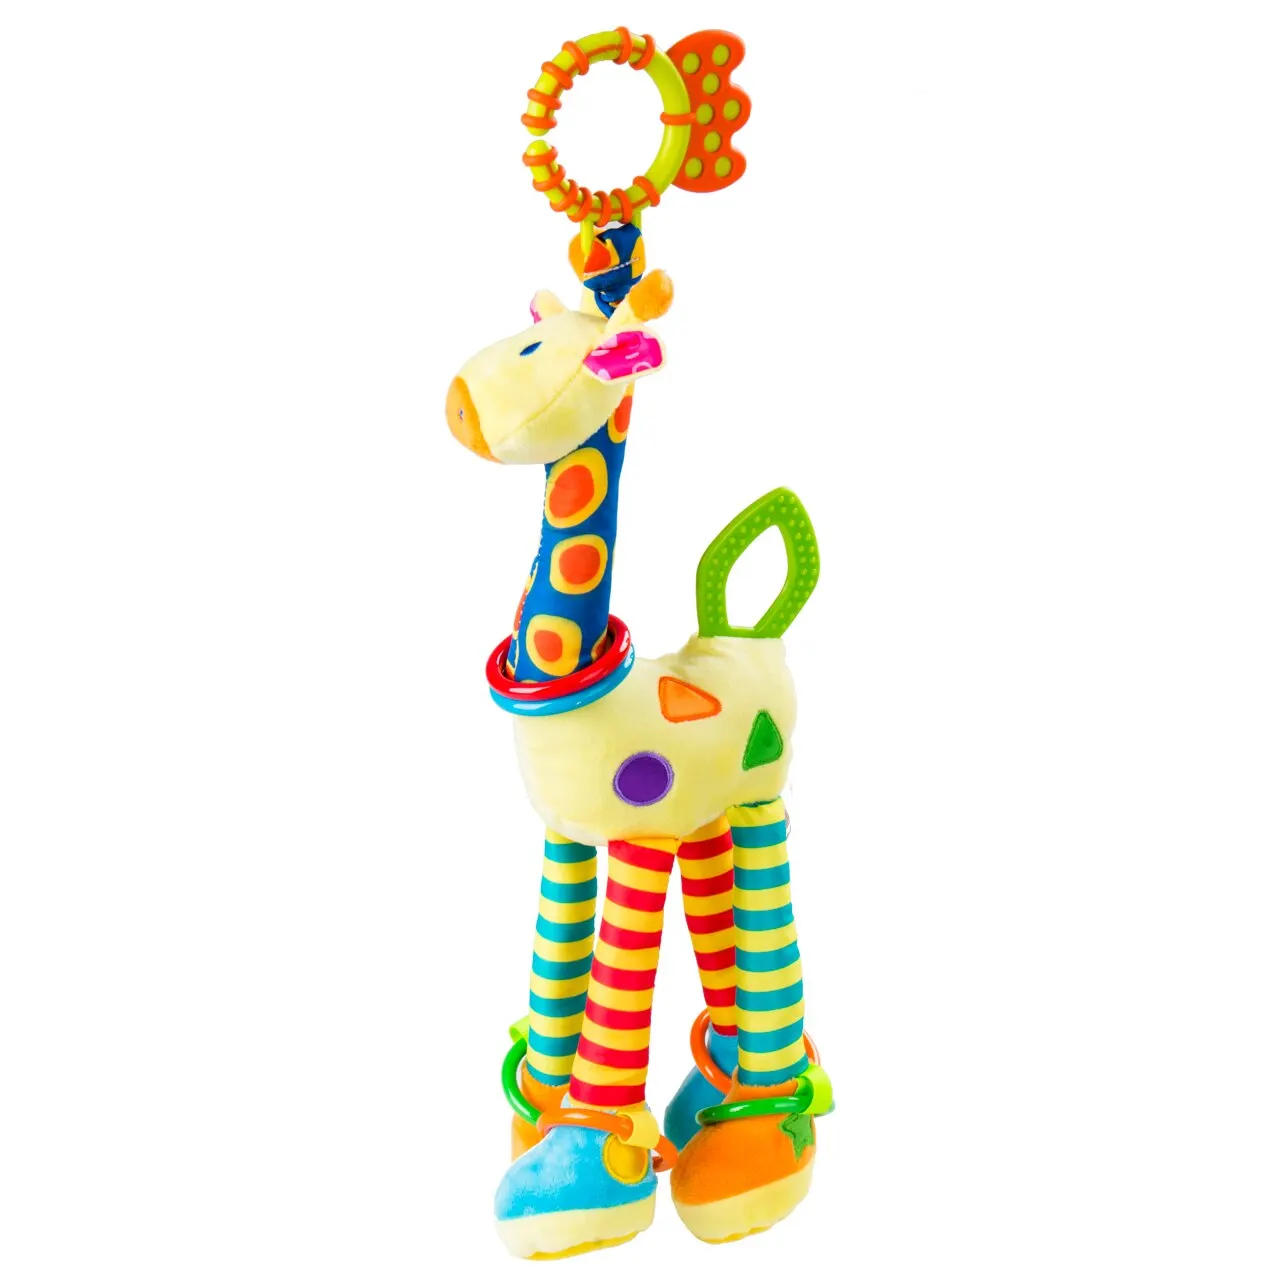 Детская спиральная погремушка для детской коляски|Интерактивные игрушки